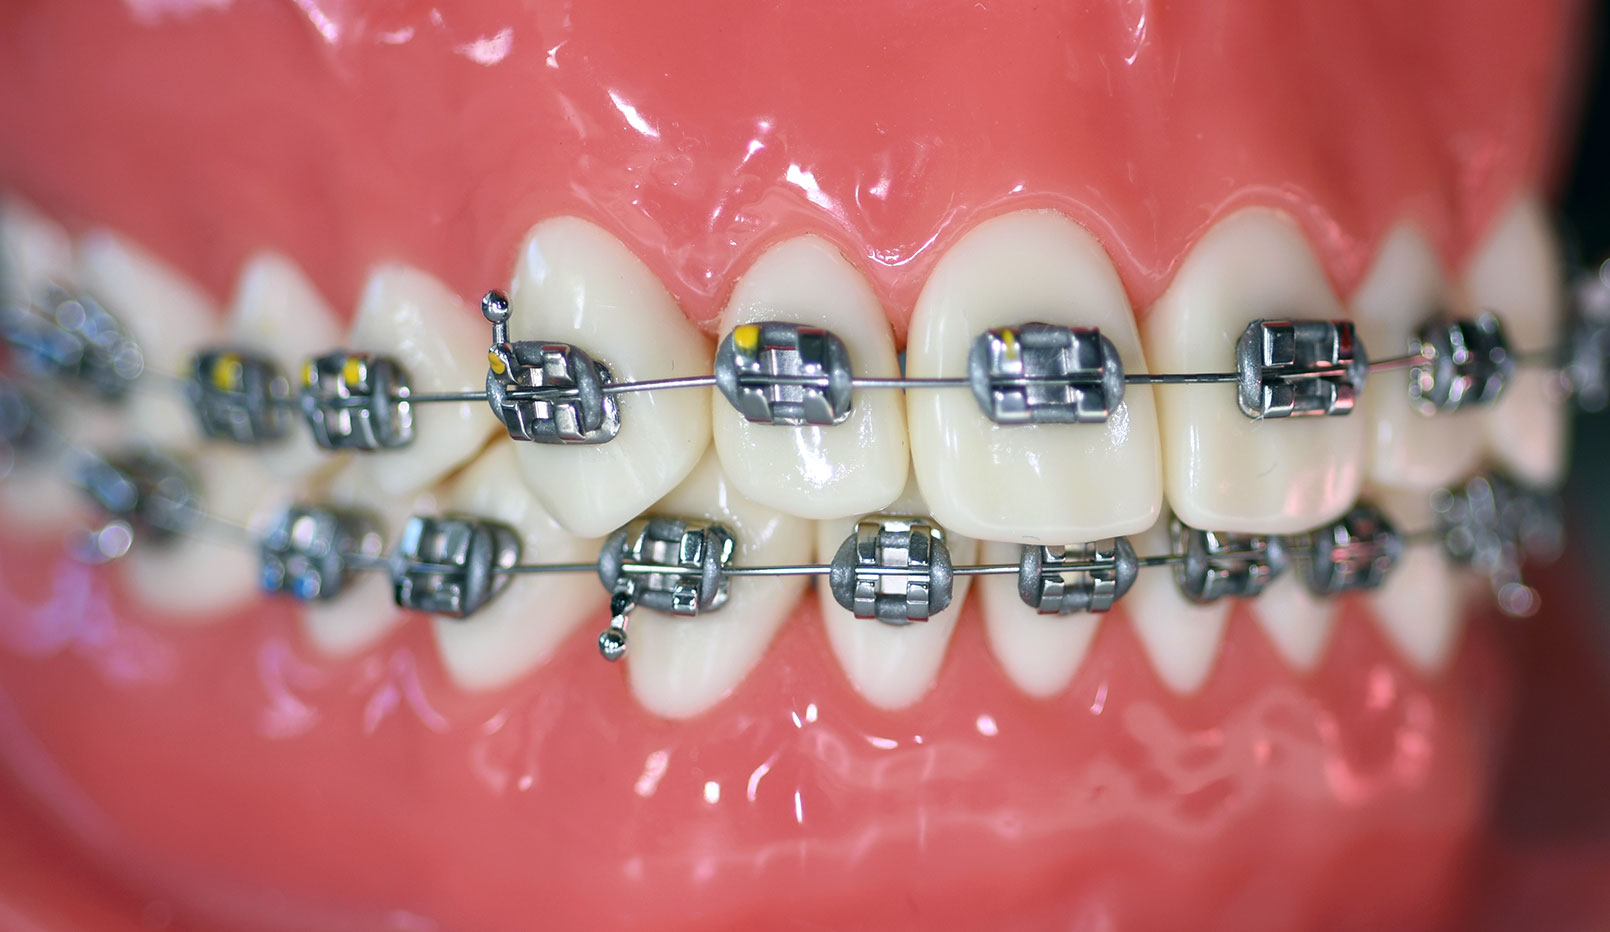 Tandställning på modell. En behandlingsmetod för tandreglering.